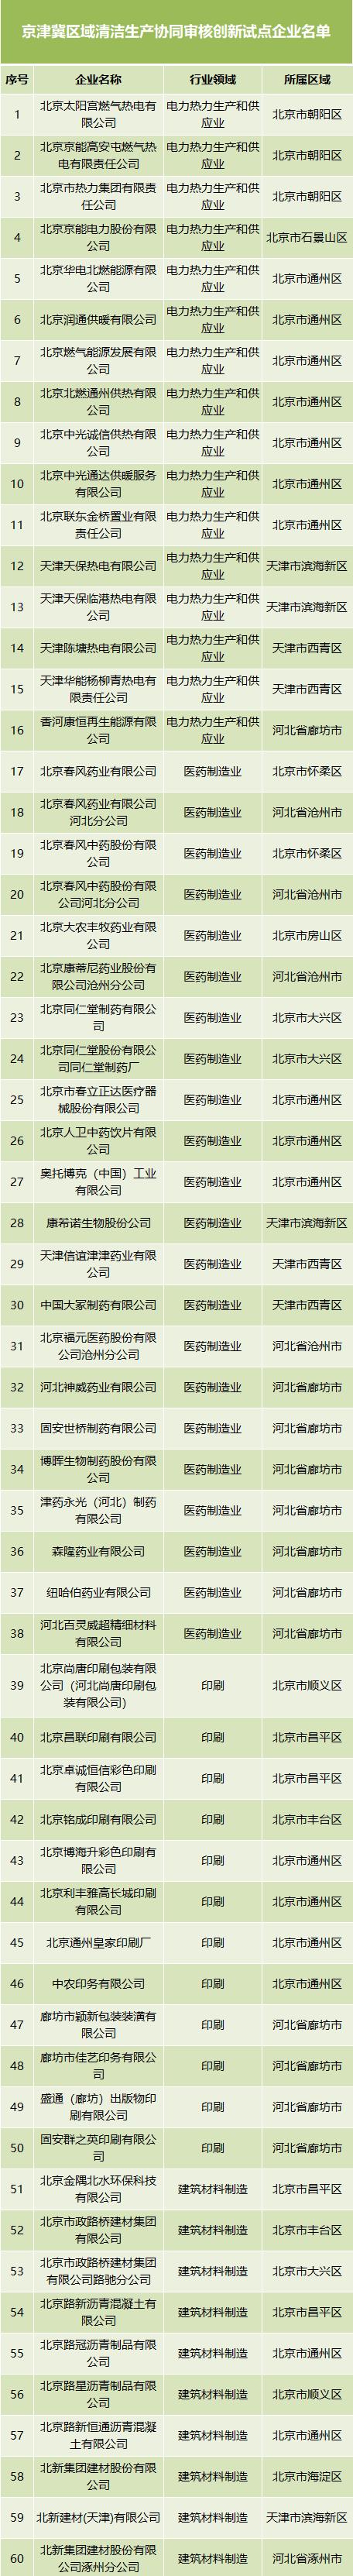 京津冀区域清洁生产协同审核创新试点企业名单公布